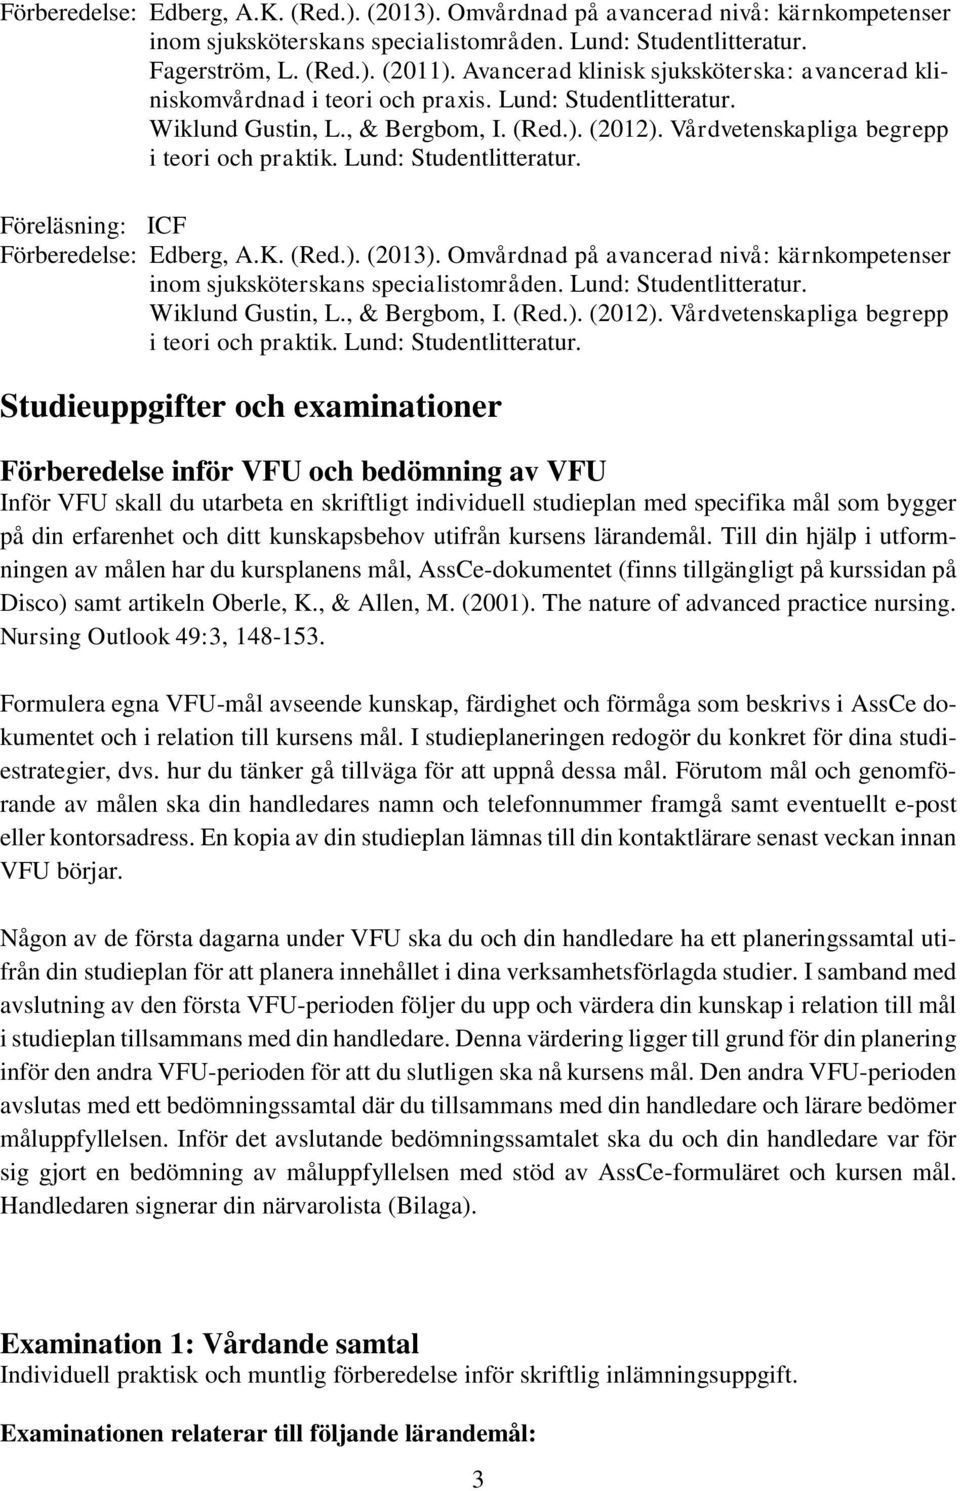 Omvårdnad på avancerad nivå: kärnkompetenser Wiklund Gustin, L., & Bergbom, I. (Red.). (2012). Vårdvetenskapliga begrepp i teori och praktik. Lund: Studentlitteratur.